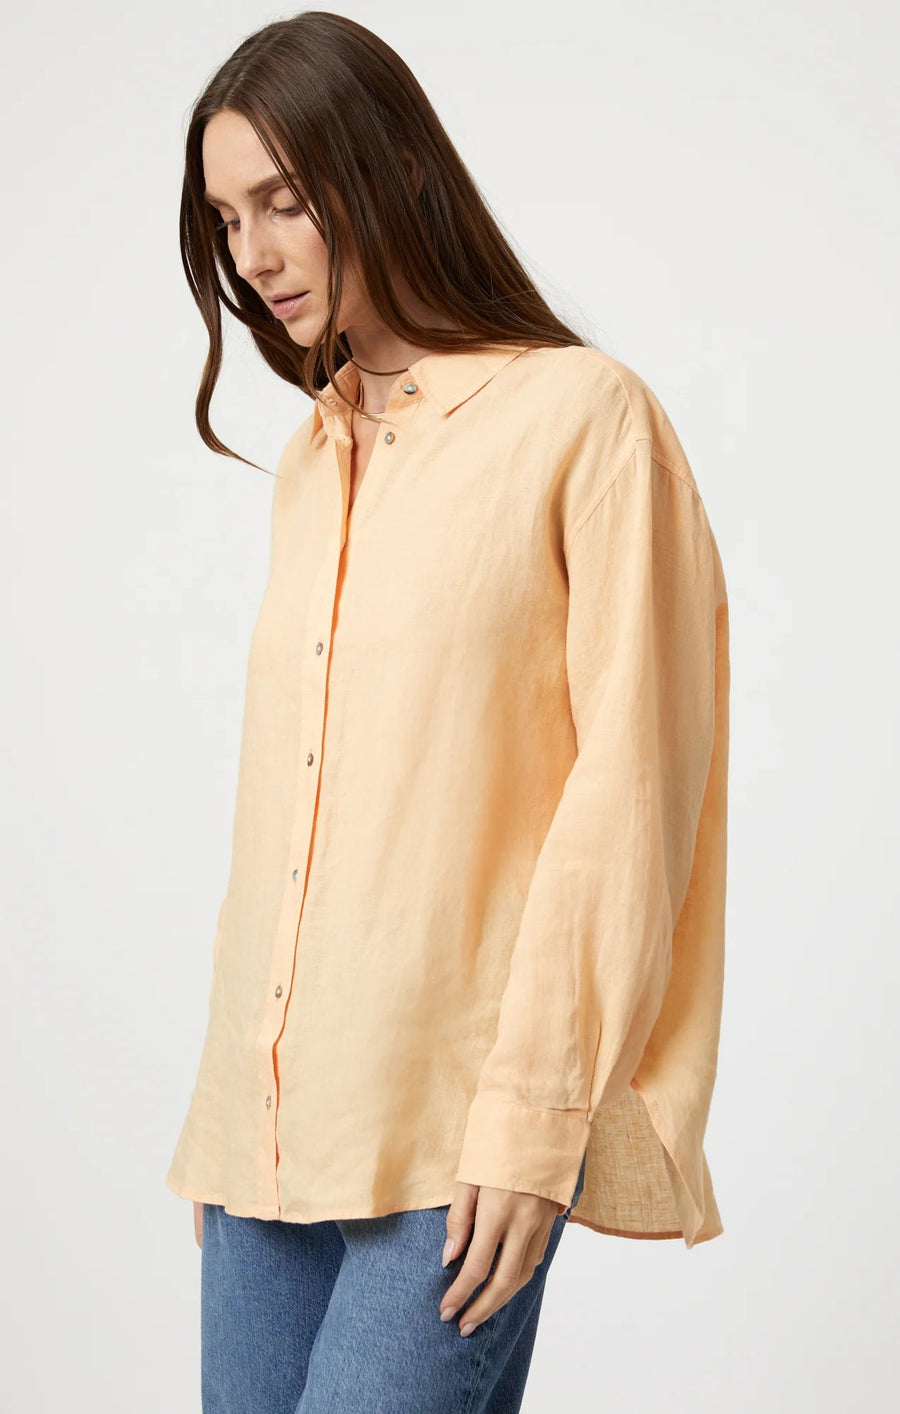 Linen Button-Up Shirt - Caramel Cream - Blue Sky Fashions & Lingerie